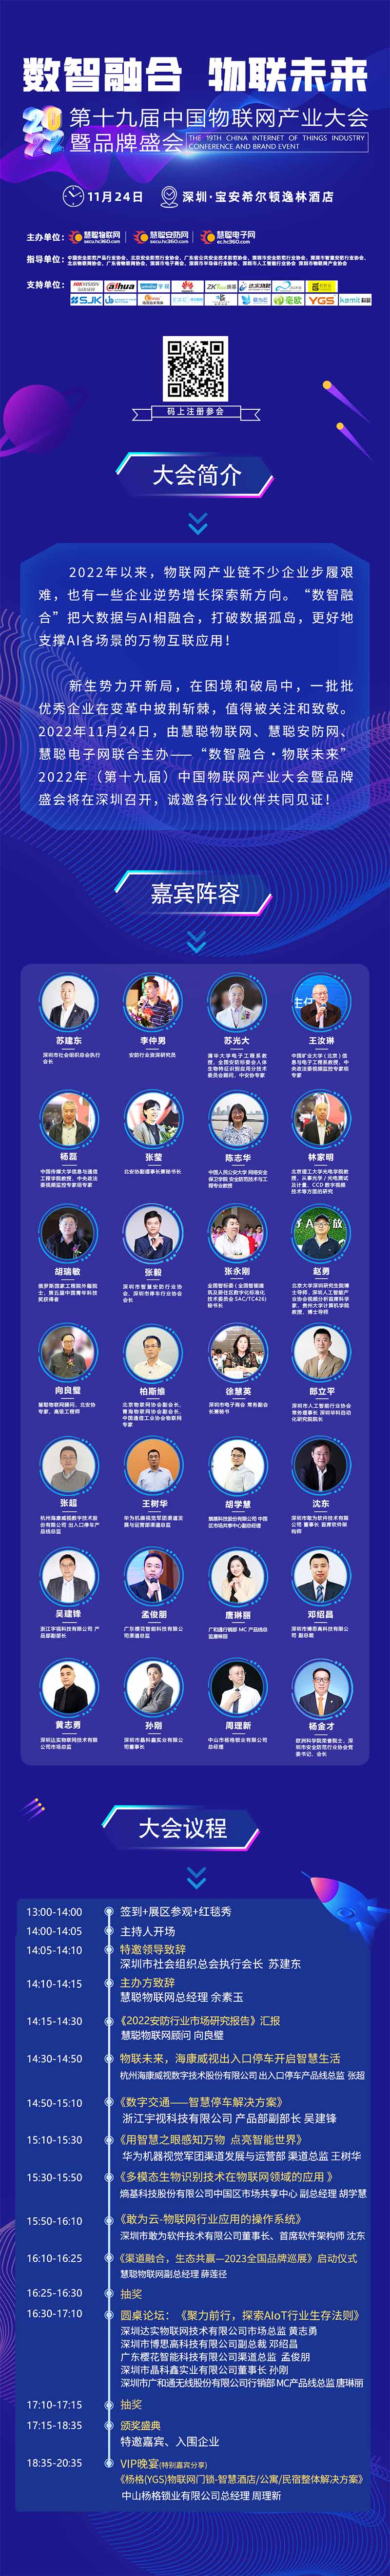 中国物联网产业大会